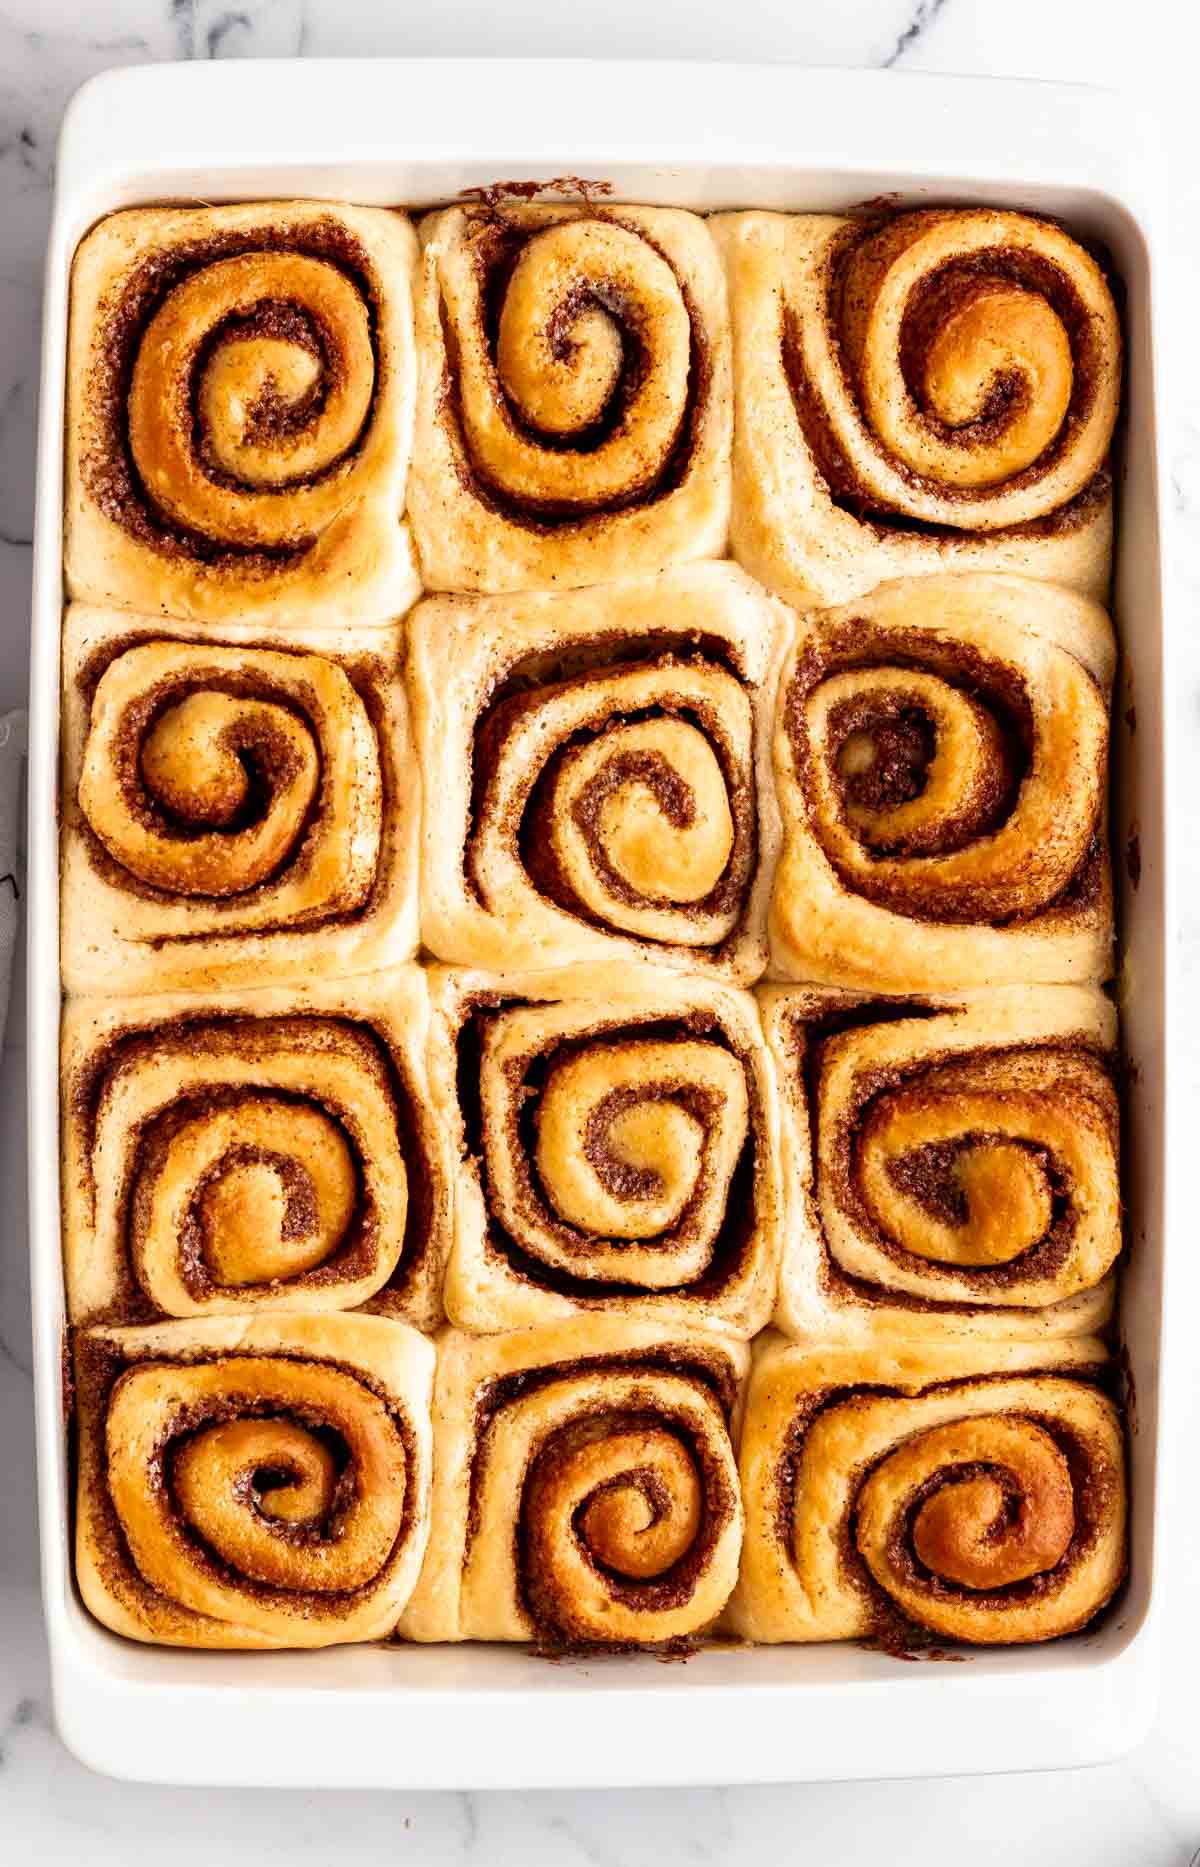 Top of baked cinnamon rolls.